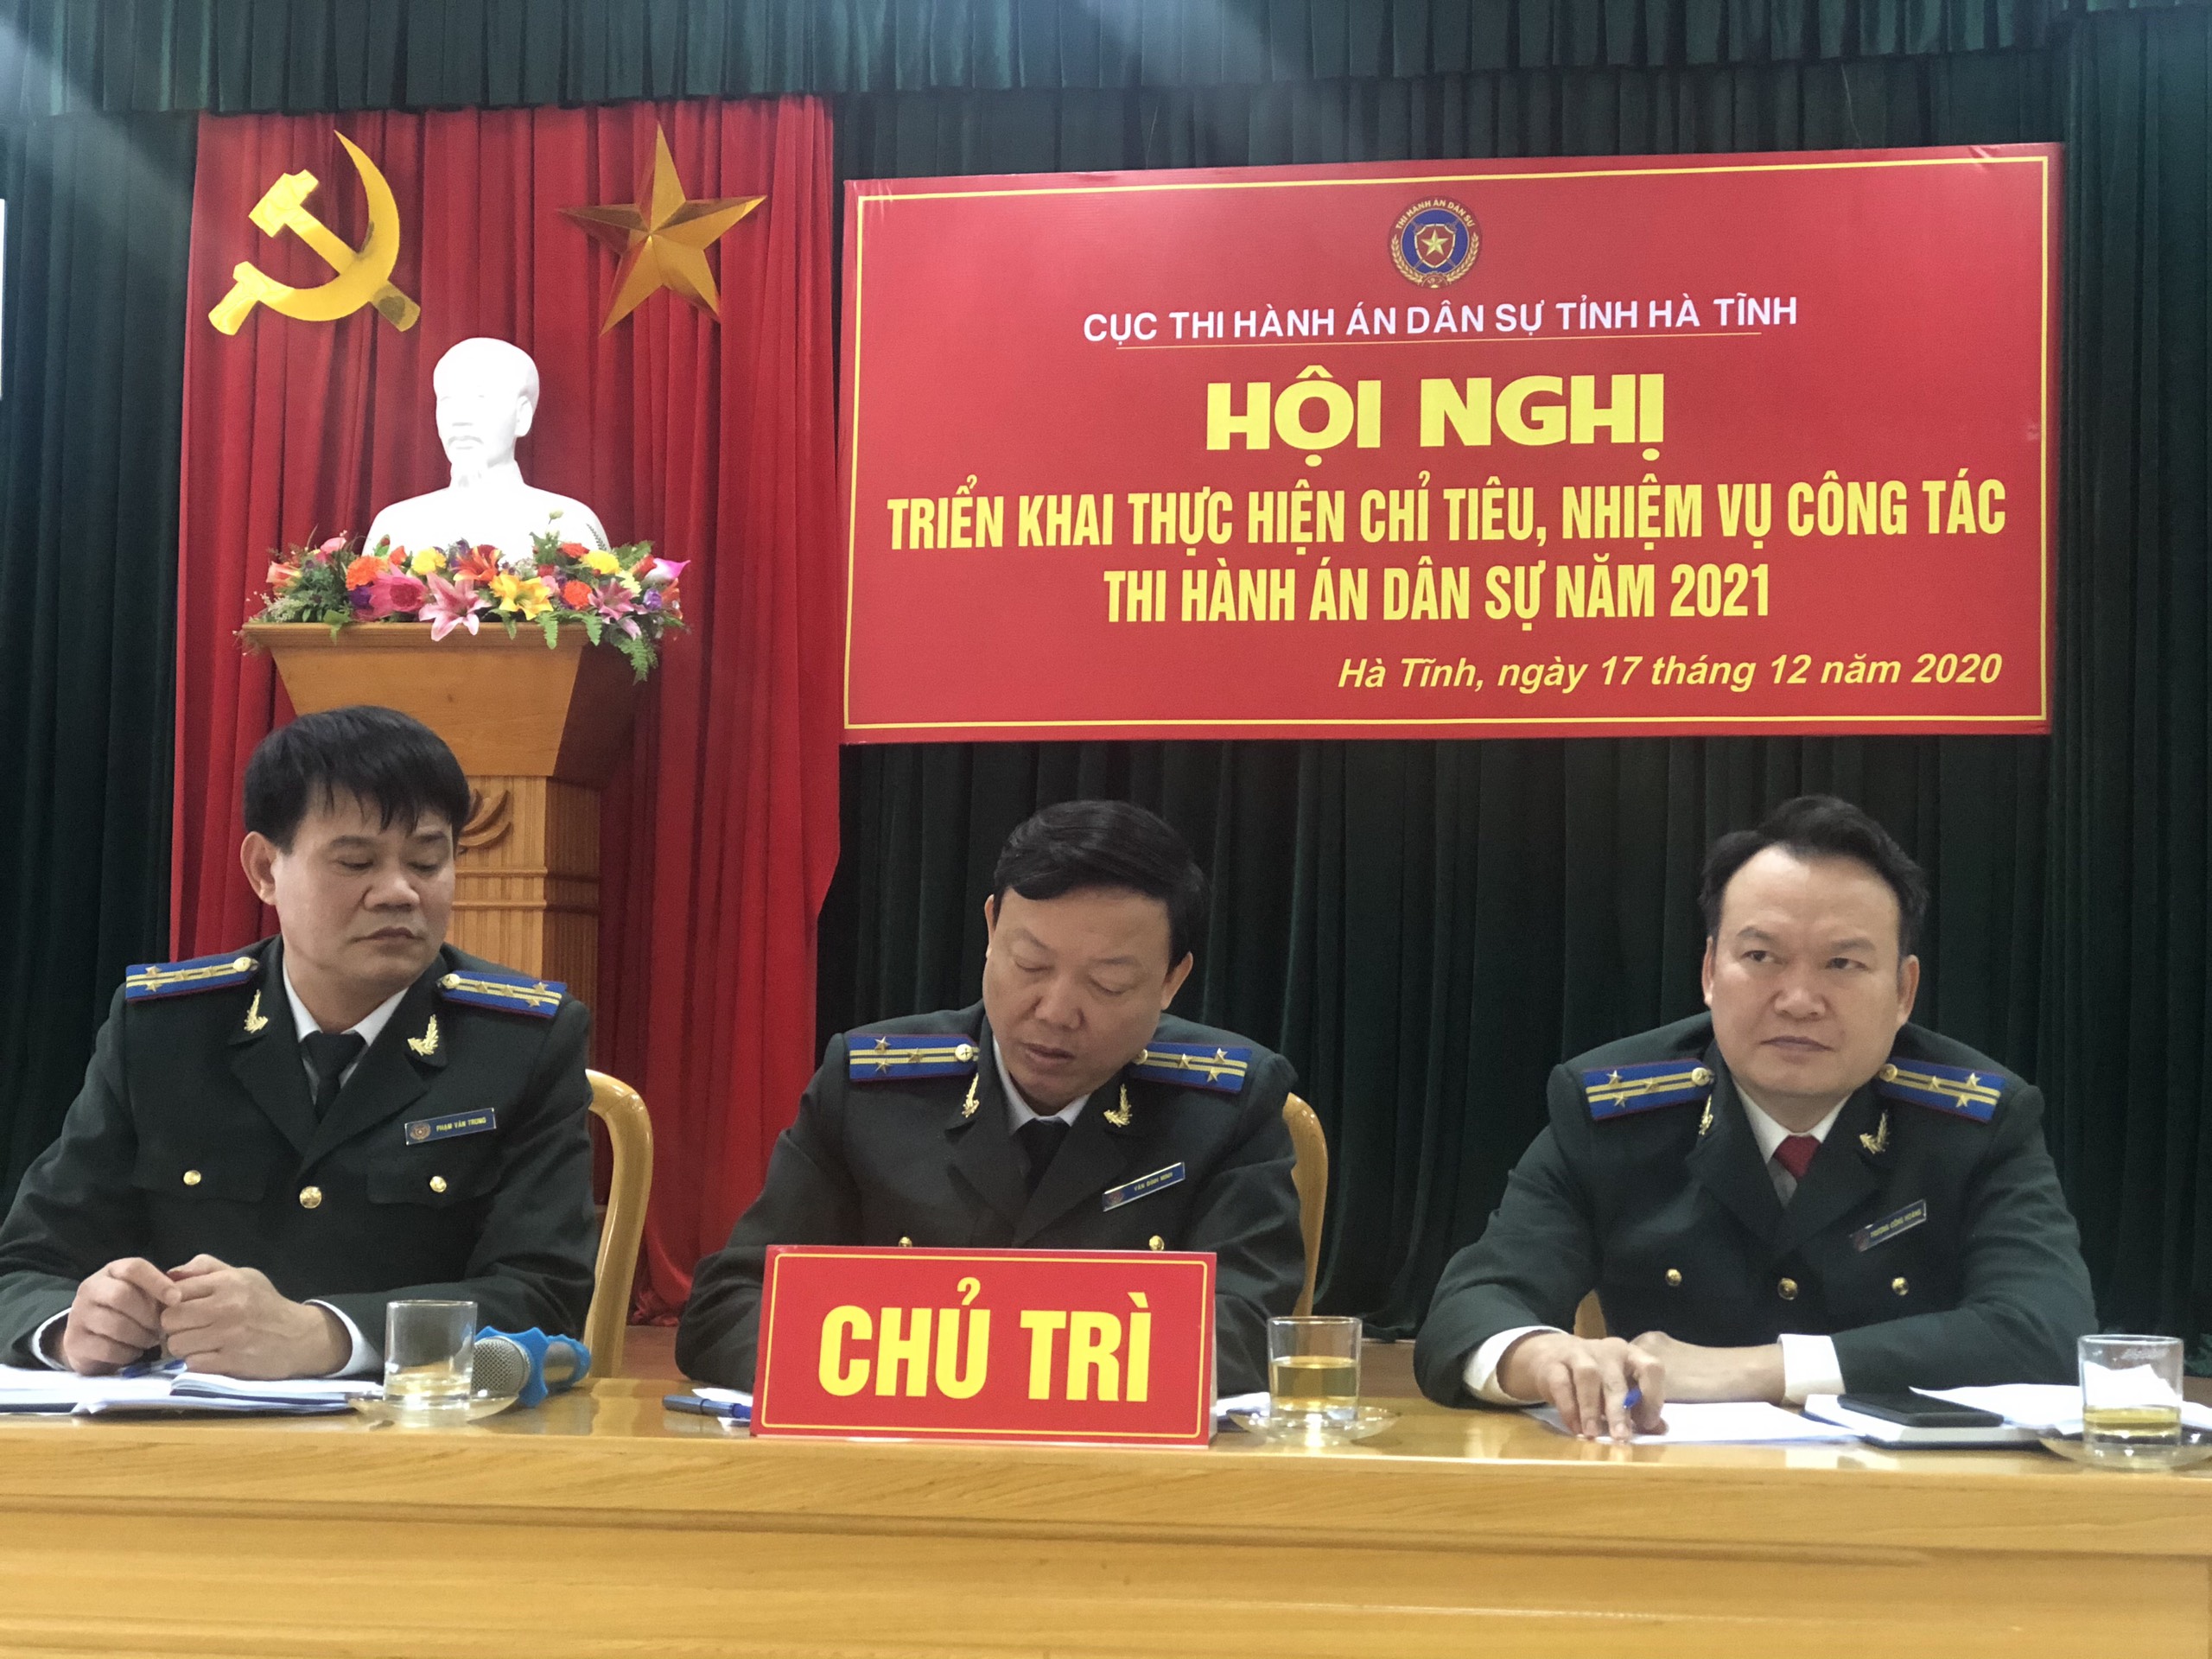 Cục Thi hành án dân sự tỉnh Hà Tĩnh tổ chức Hội nghị tổng kết công tác THADS năm 2020, triển khai nhiệm vụ công tác năm 2021.